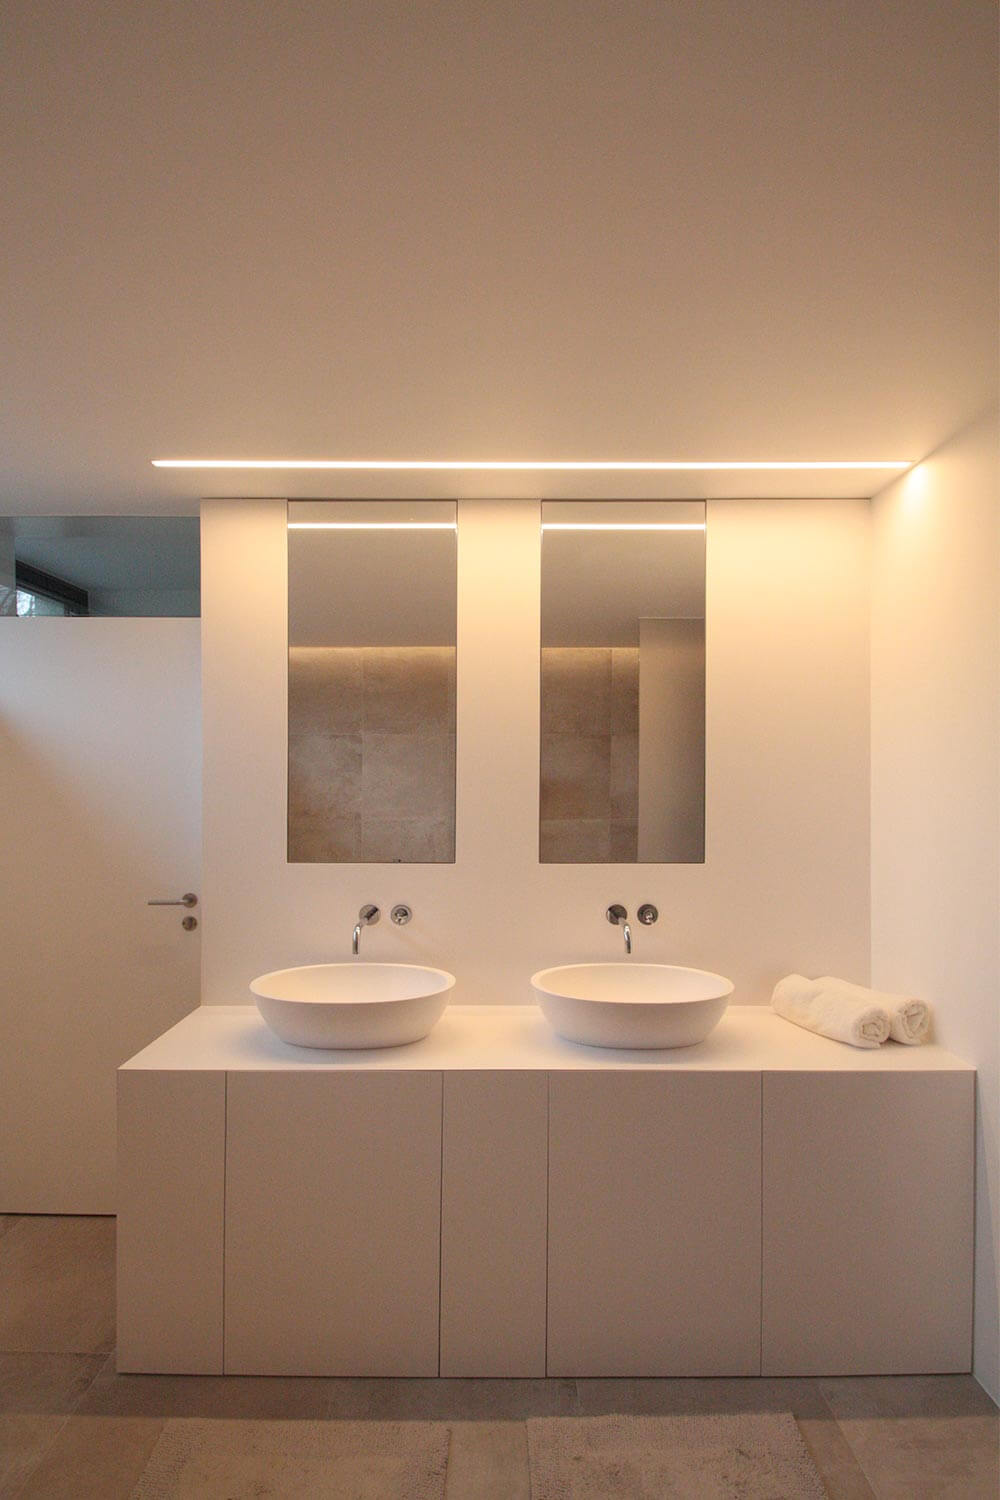 moderne badkamer met beige keramische tegels op de vloer. Witte muren. Zicht op muur met het lavabomeubel dat bestaat uit een kast met deuren. De lavabo's op de kast zijn vrijstaand. boven de lavabo's hangen spiegels